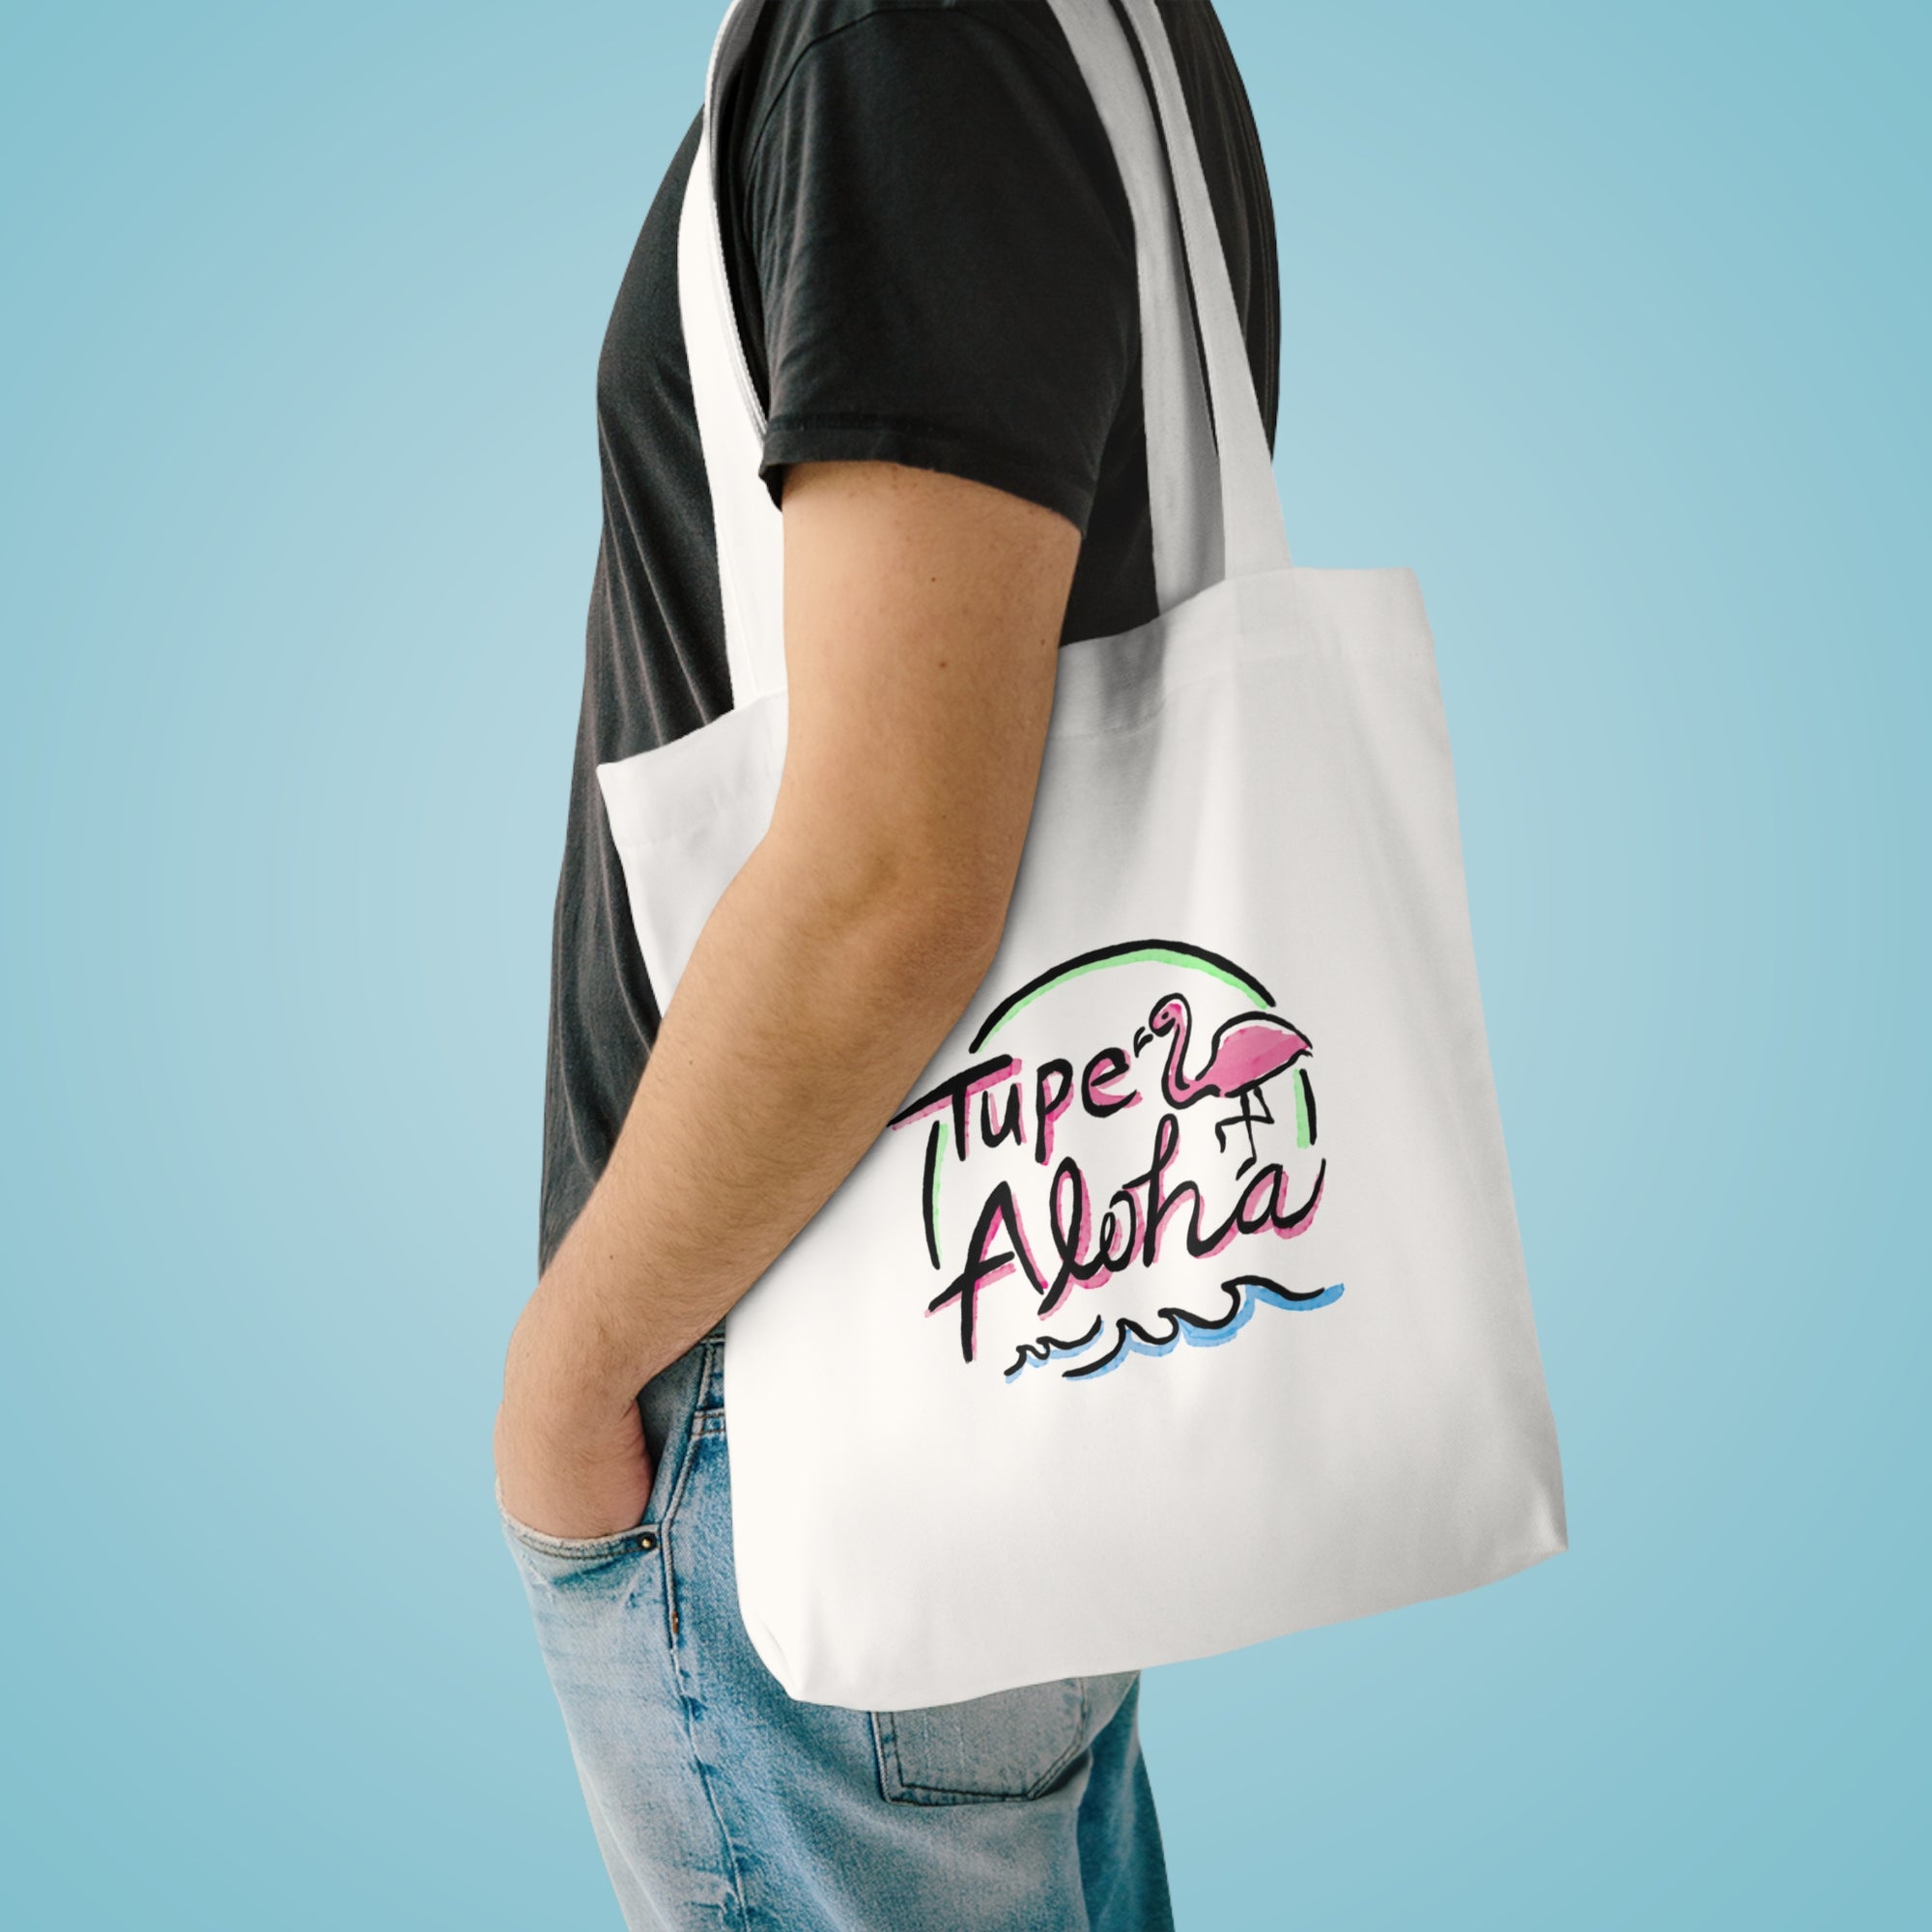 Tupe - Trendy Cotton Tote Bag